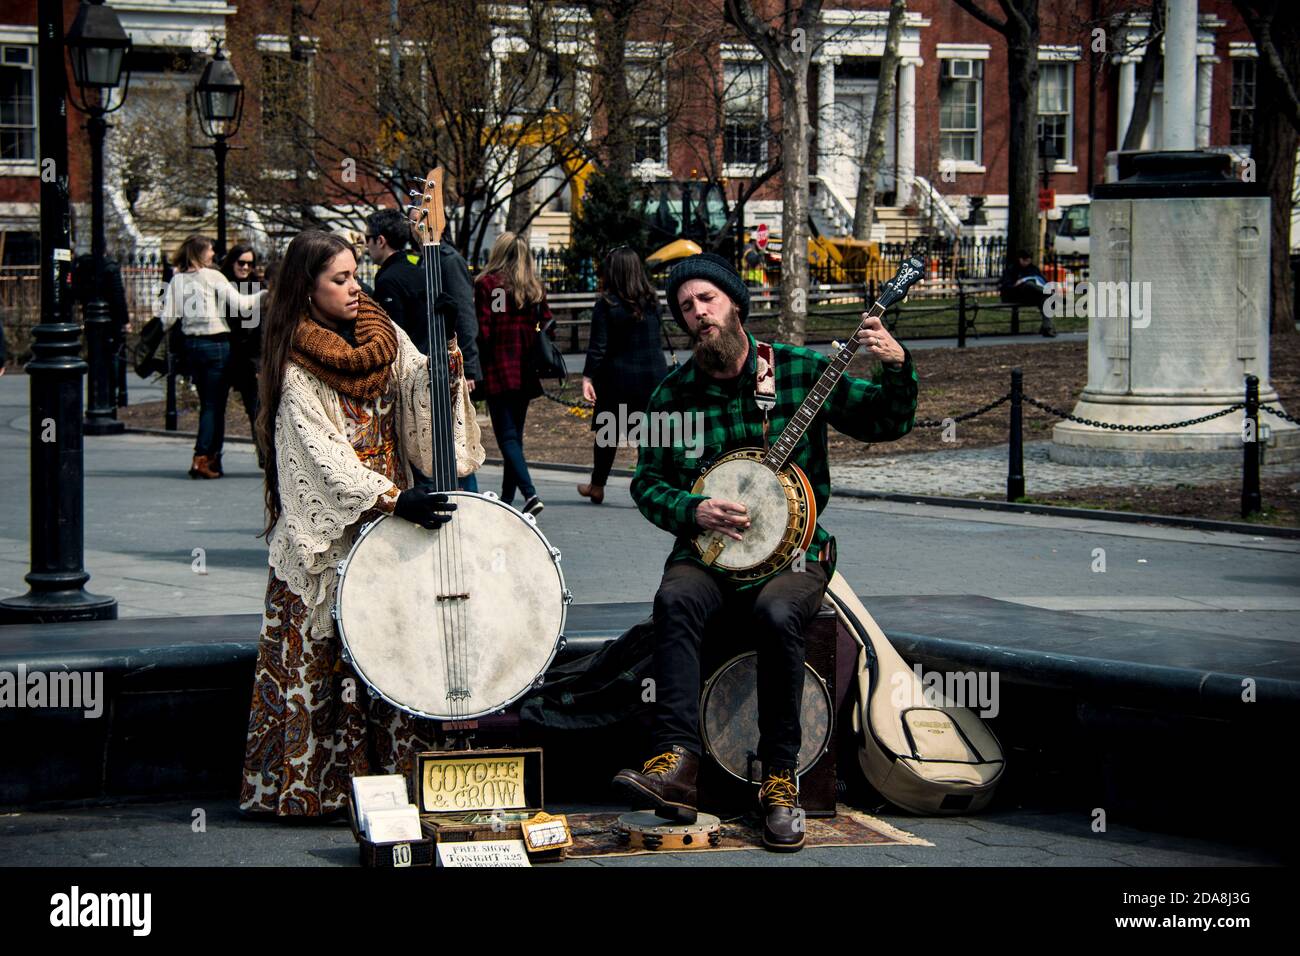 Couple marié Coyote & Crow jouant du bluegrass sur un banjo à 5 cordes et un banjo de basse unique en son genre à Washington Square Park, Greenwich Village, New York. NY Banque D'Images